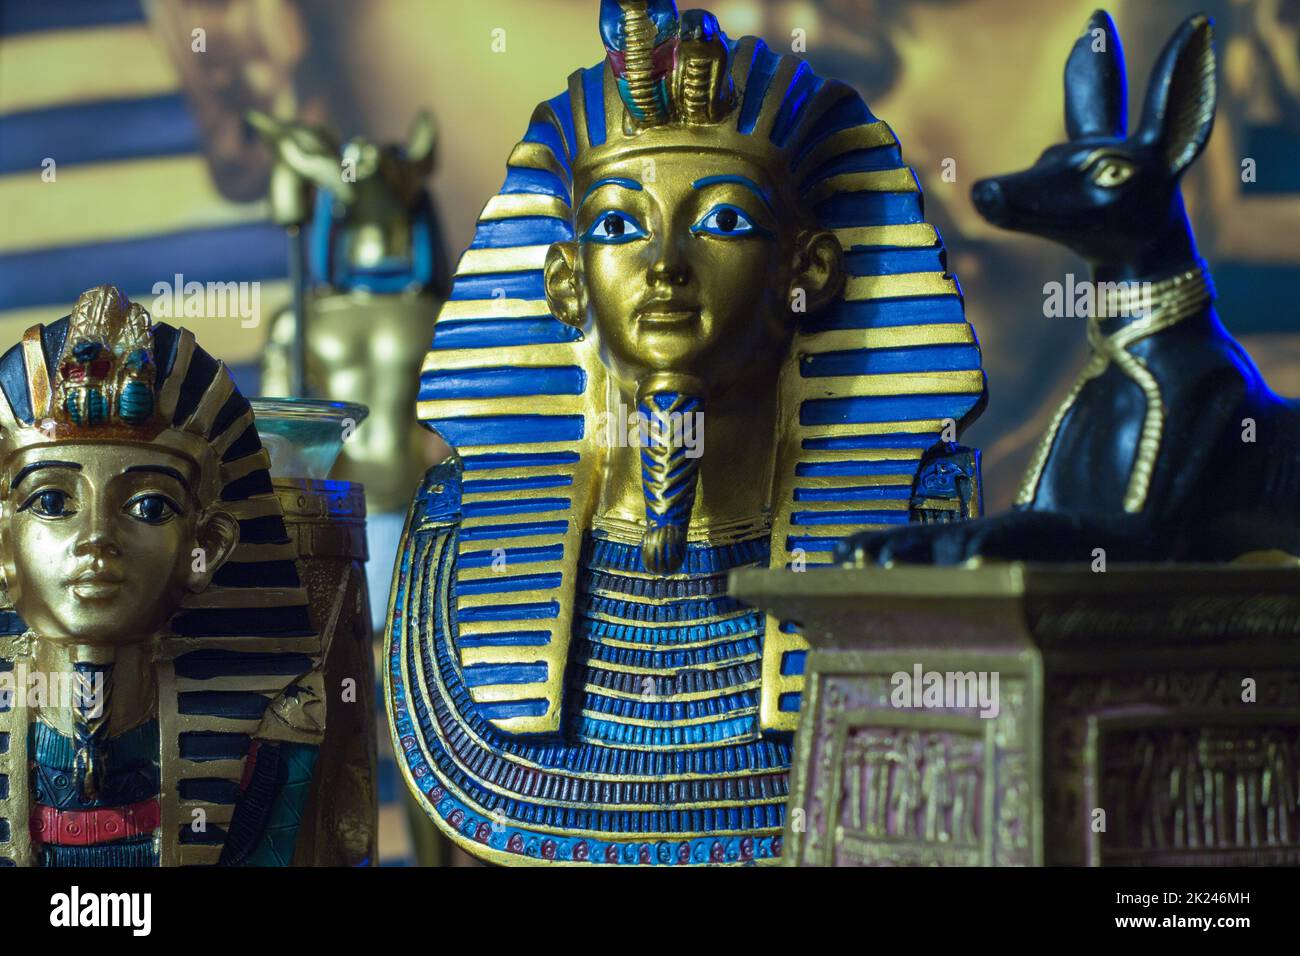 Still life of statues of king pharaoh tutankhamun tutankhamen and mythology jackal anup in blue Stock Photo